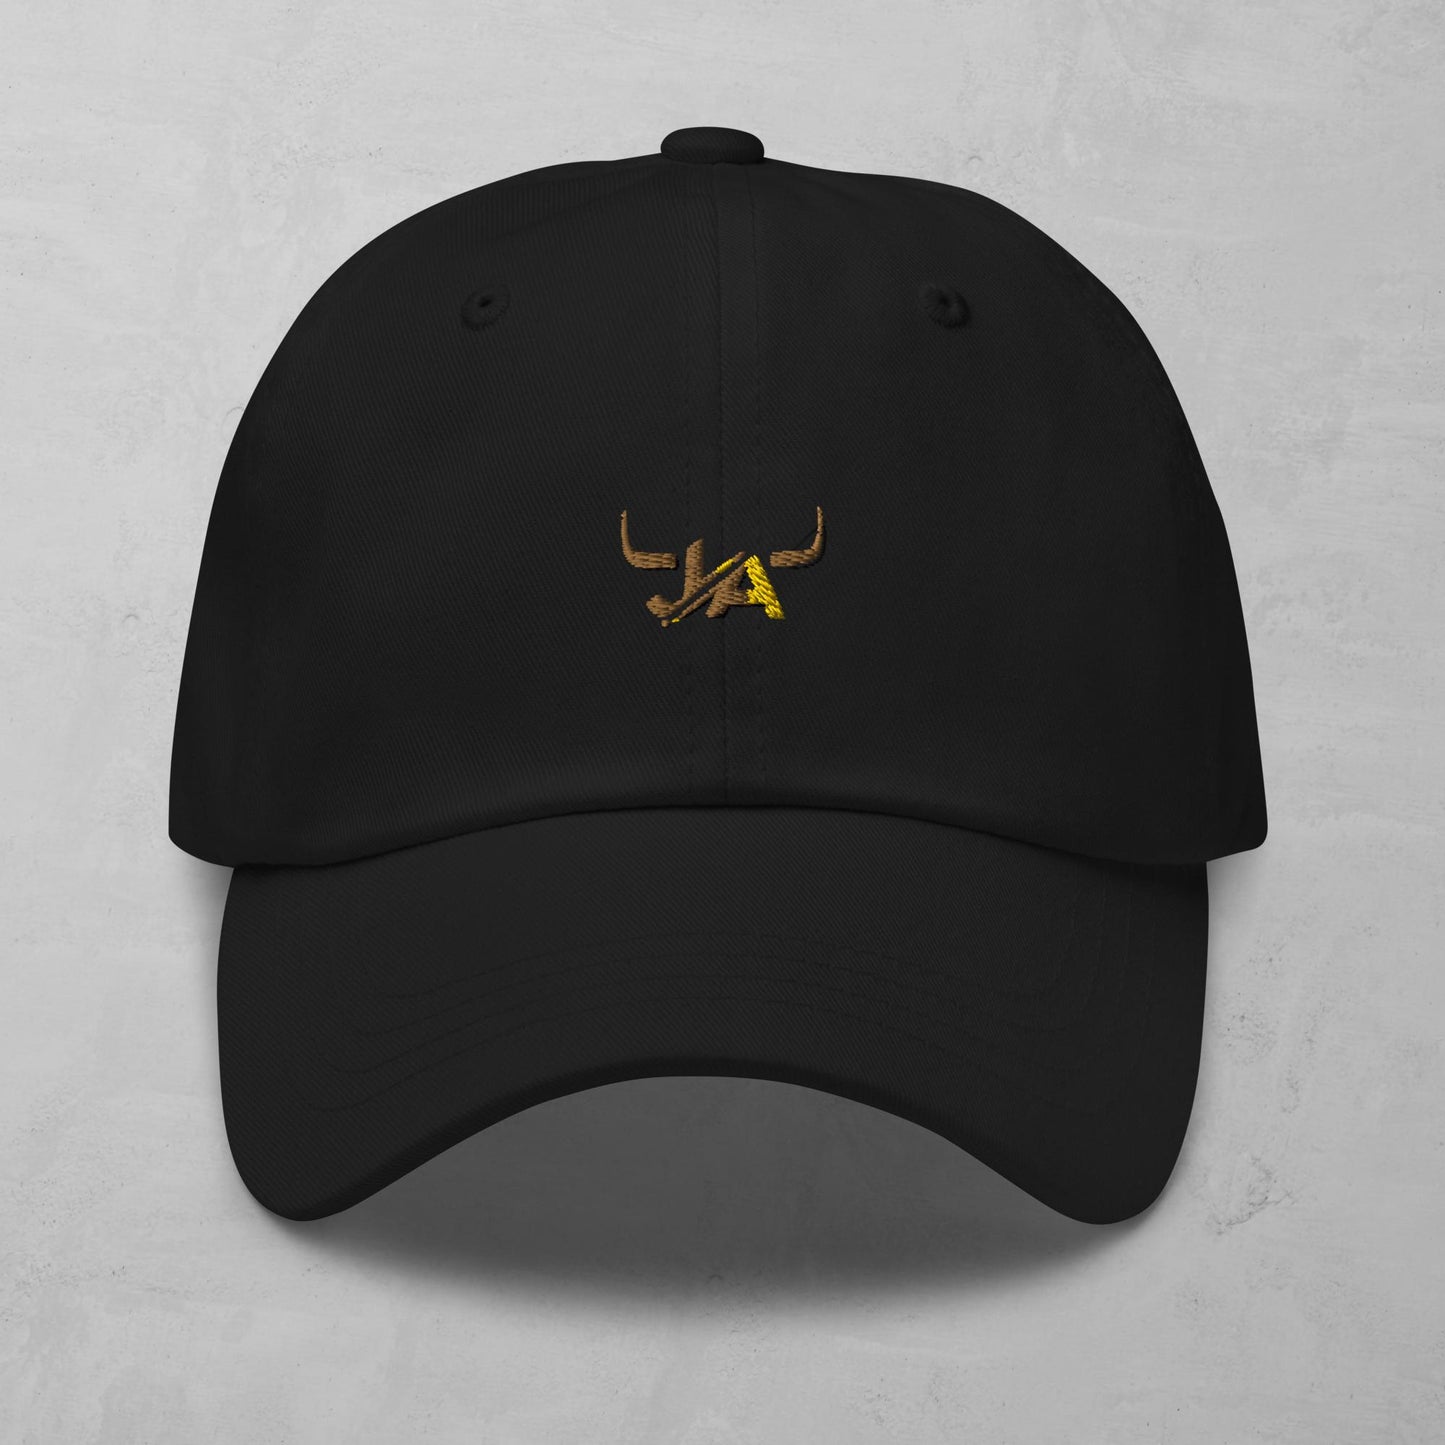 J.A Faith Women's hat